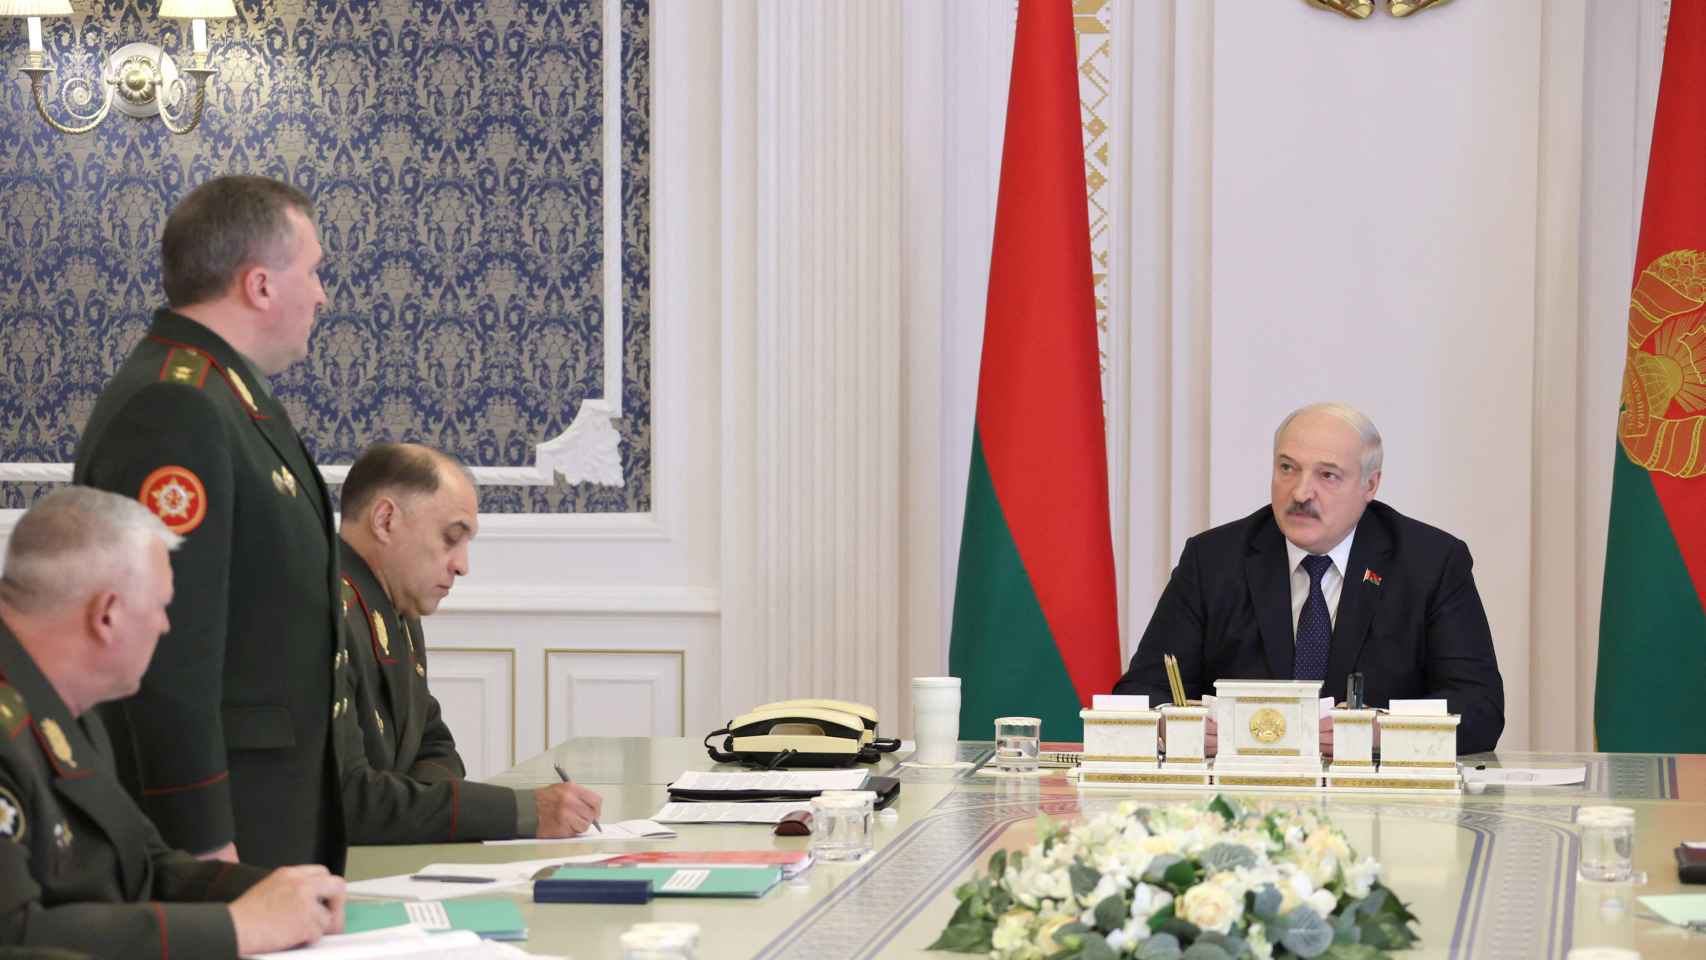 El presidente bielorruso Lukashenko preside una reunión en Minsk.